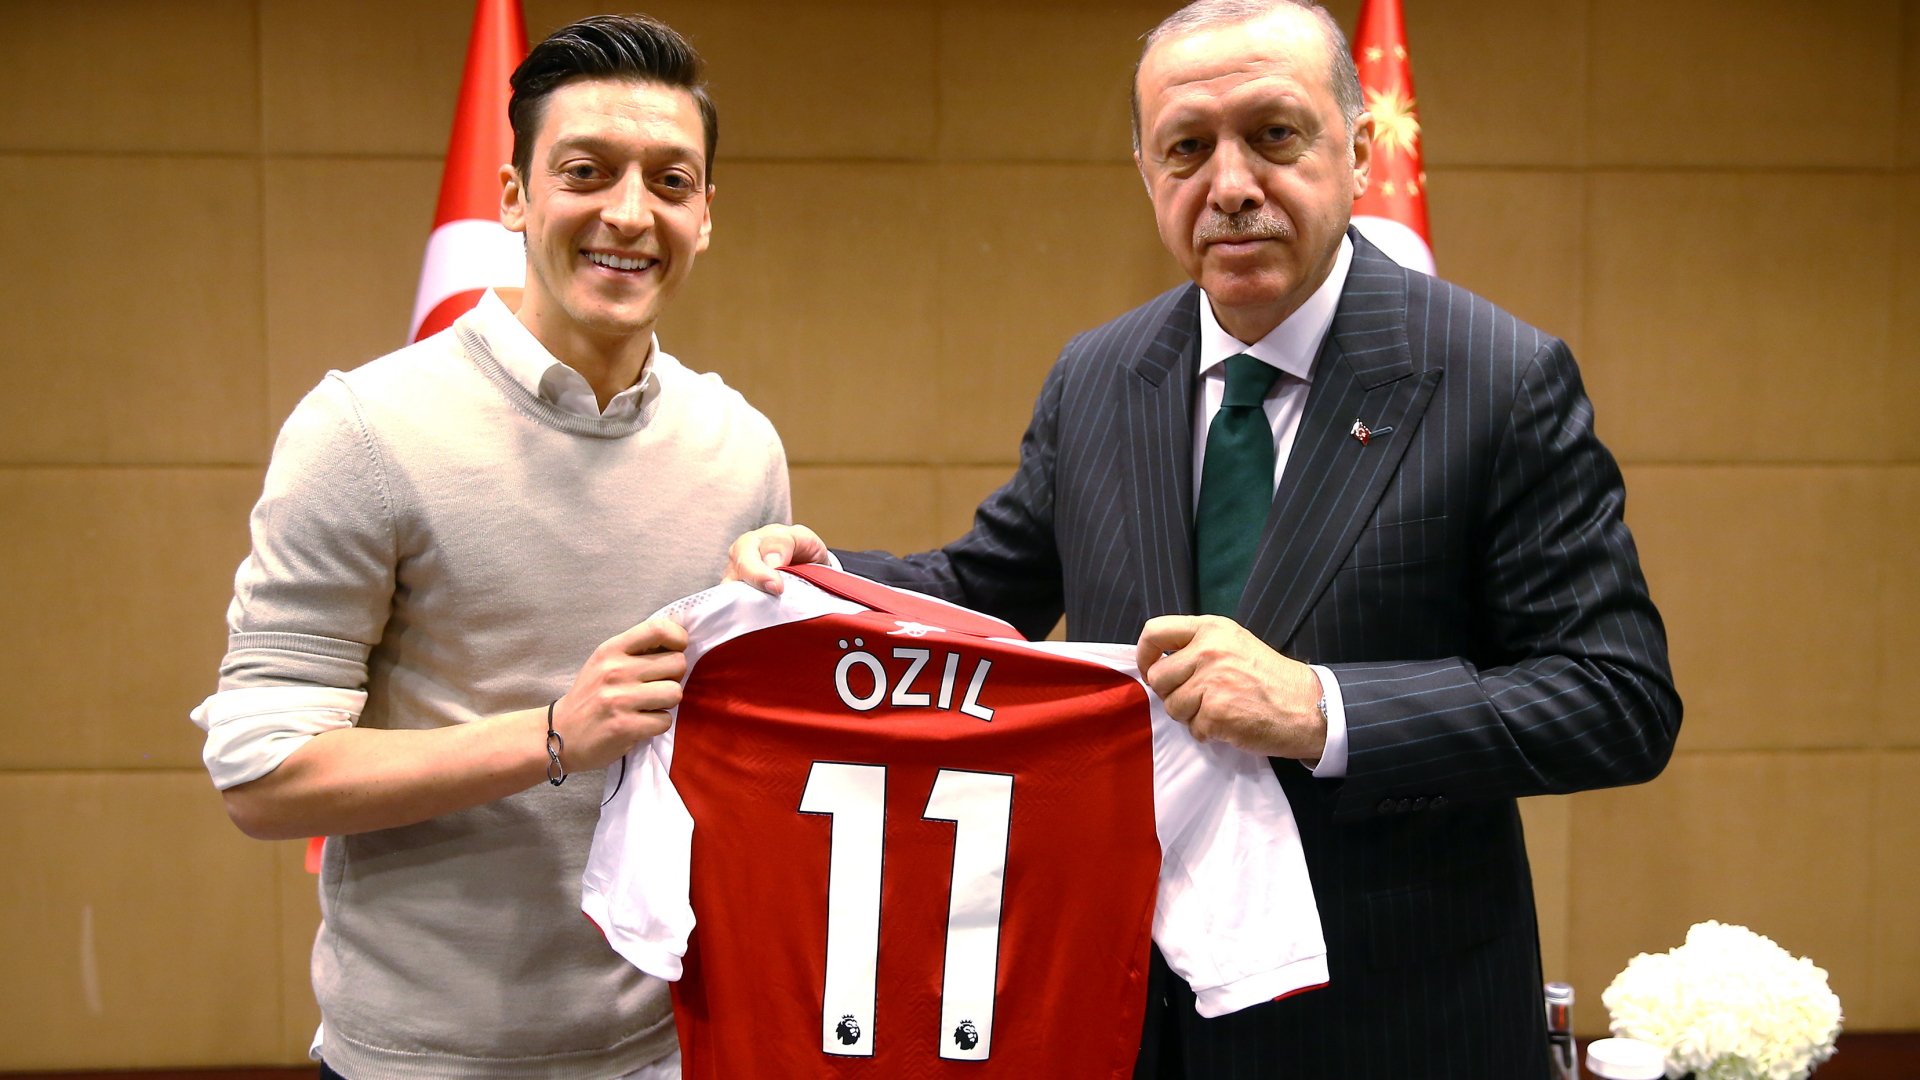 Özil überreicht Erdogan ein Trikot